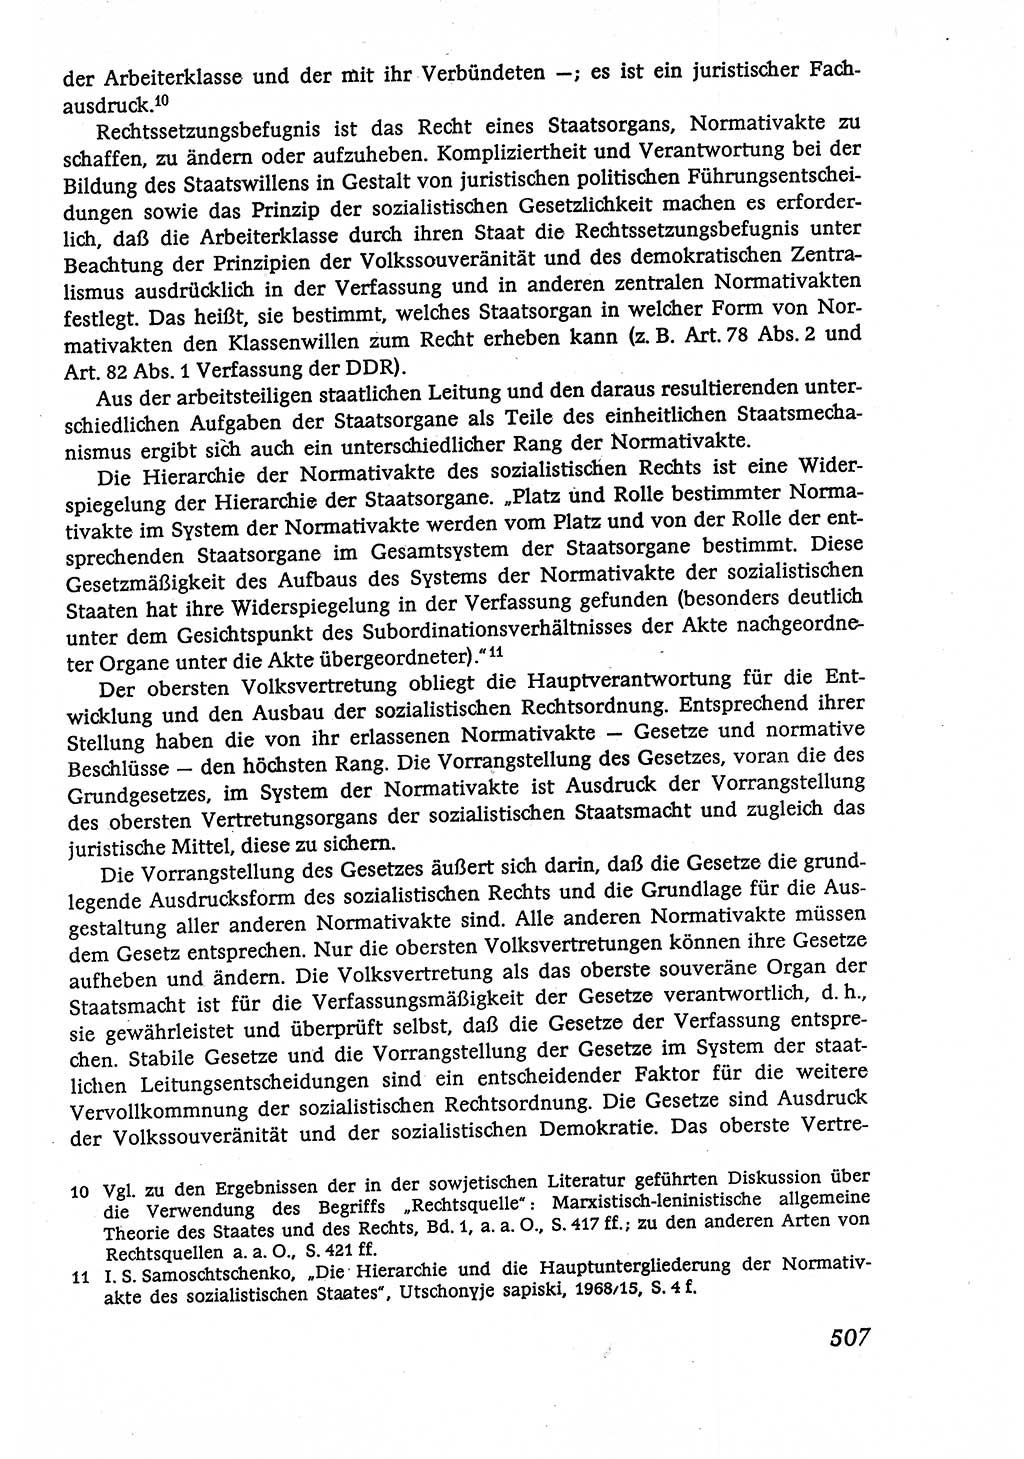 Marxistisch-leninistische (ML) Staats- und Rechtstheorie [Deutsche Demokratische Republik (DDR)], Lehrbuch 1980, Seite 507 (ML St.-R.-Th. DDR Lb. 1980, S. 507)